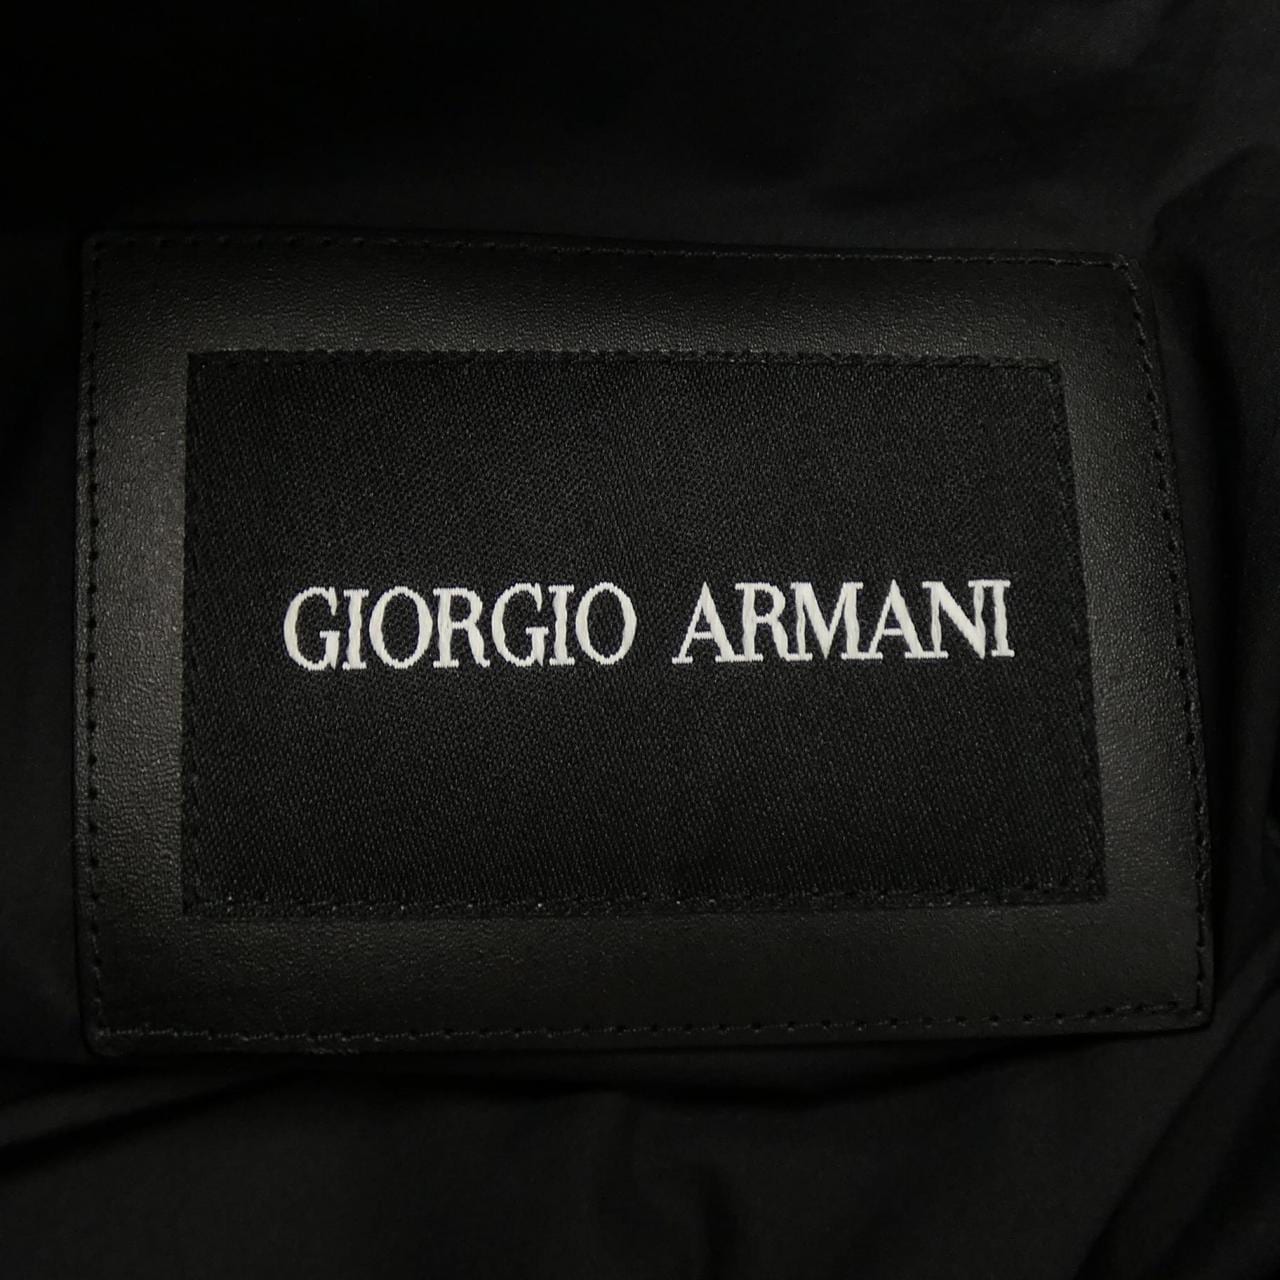 Giorgio Armani GIORGIO ARMANI羽绒服